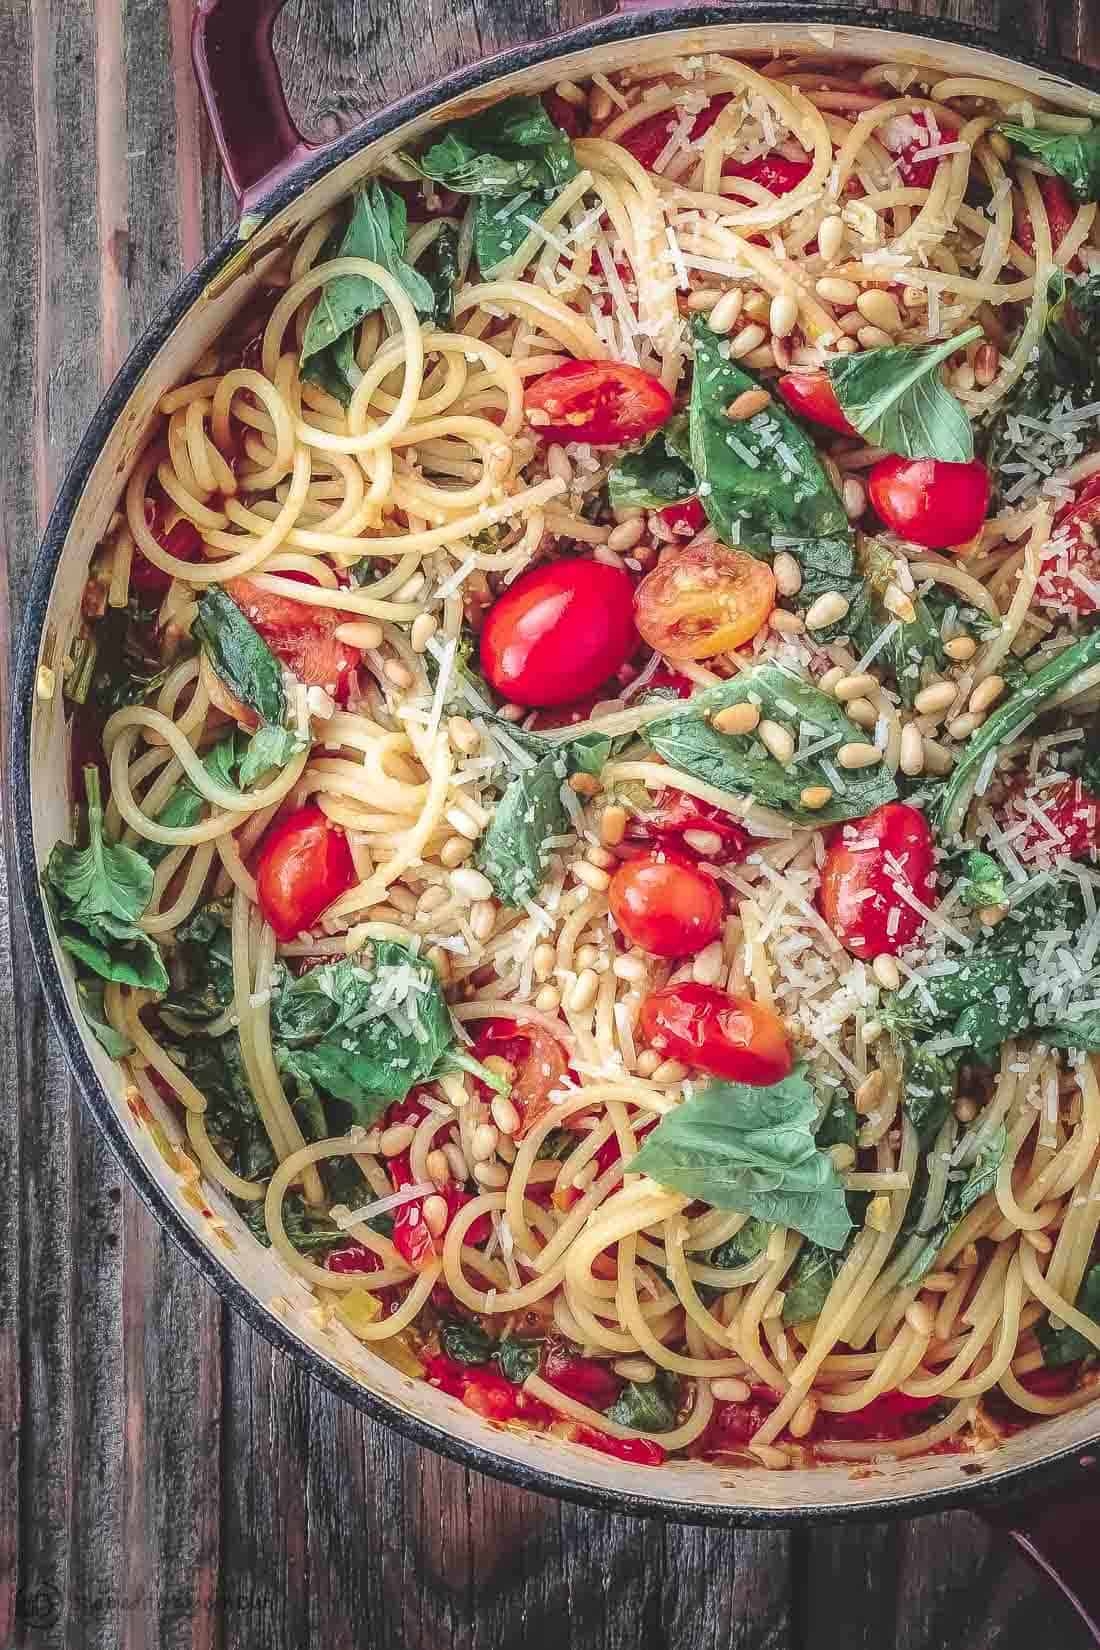 Easy Chicken Spaghetti Recipe